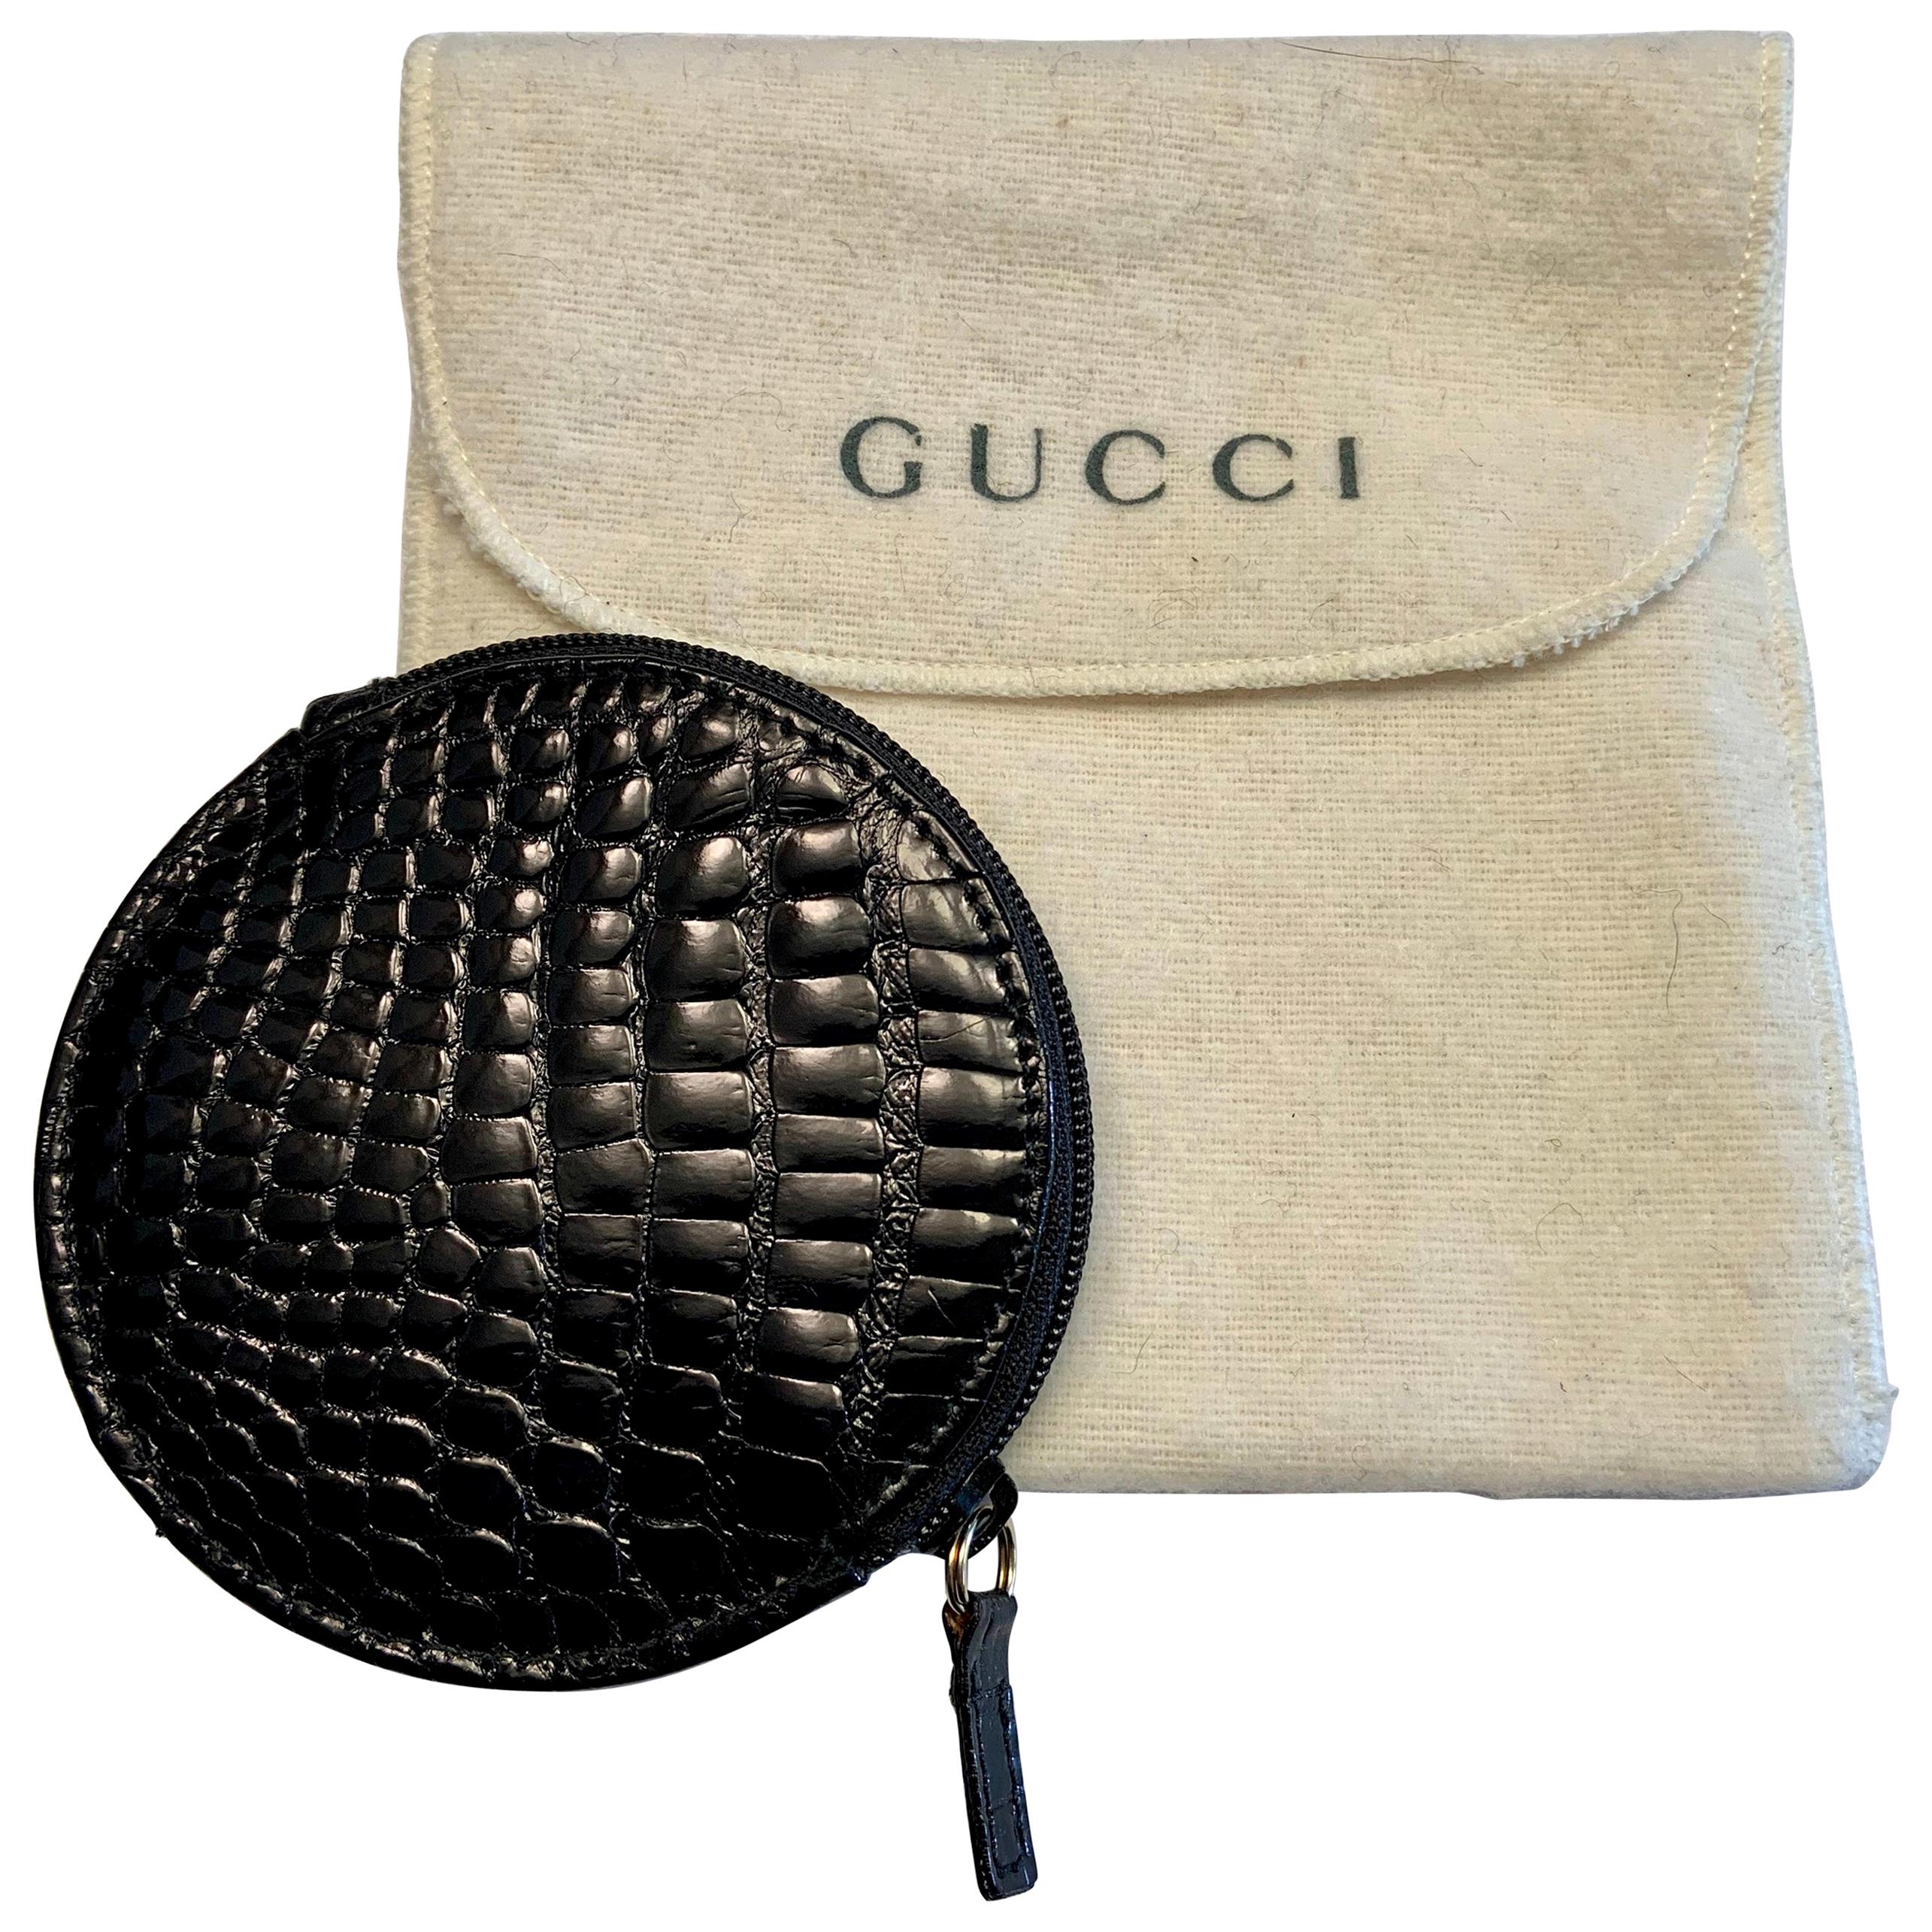 Gucci Round Zip Top Black Alligator Coin Purse, Never Used at 1stDibs |  gucci coin purse, gucci round coin purse, crocodile coin purse